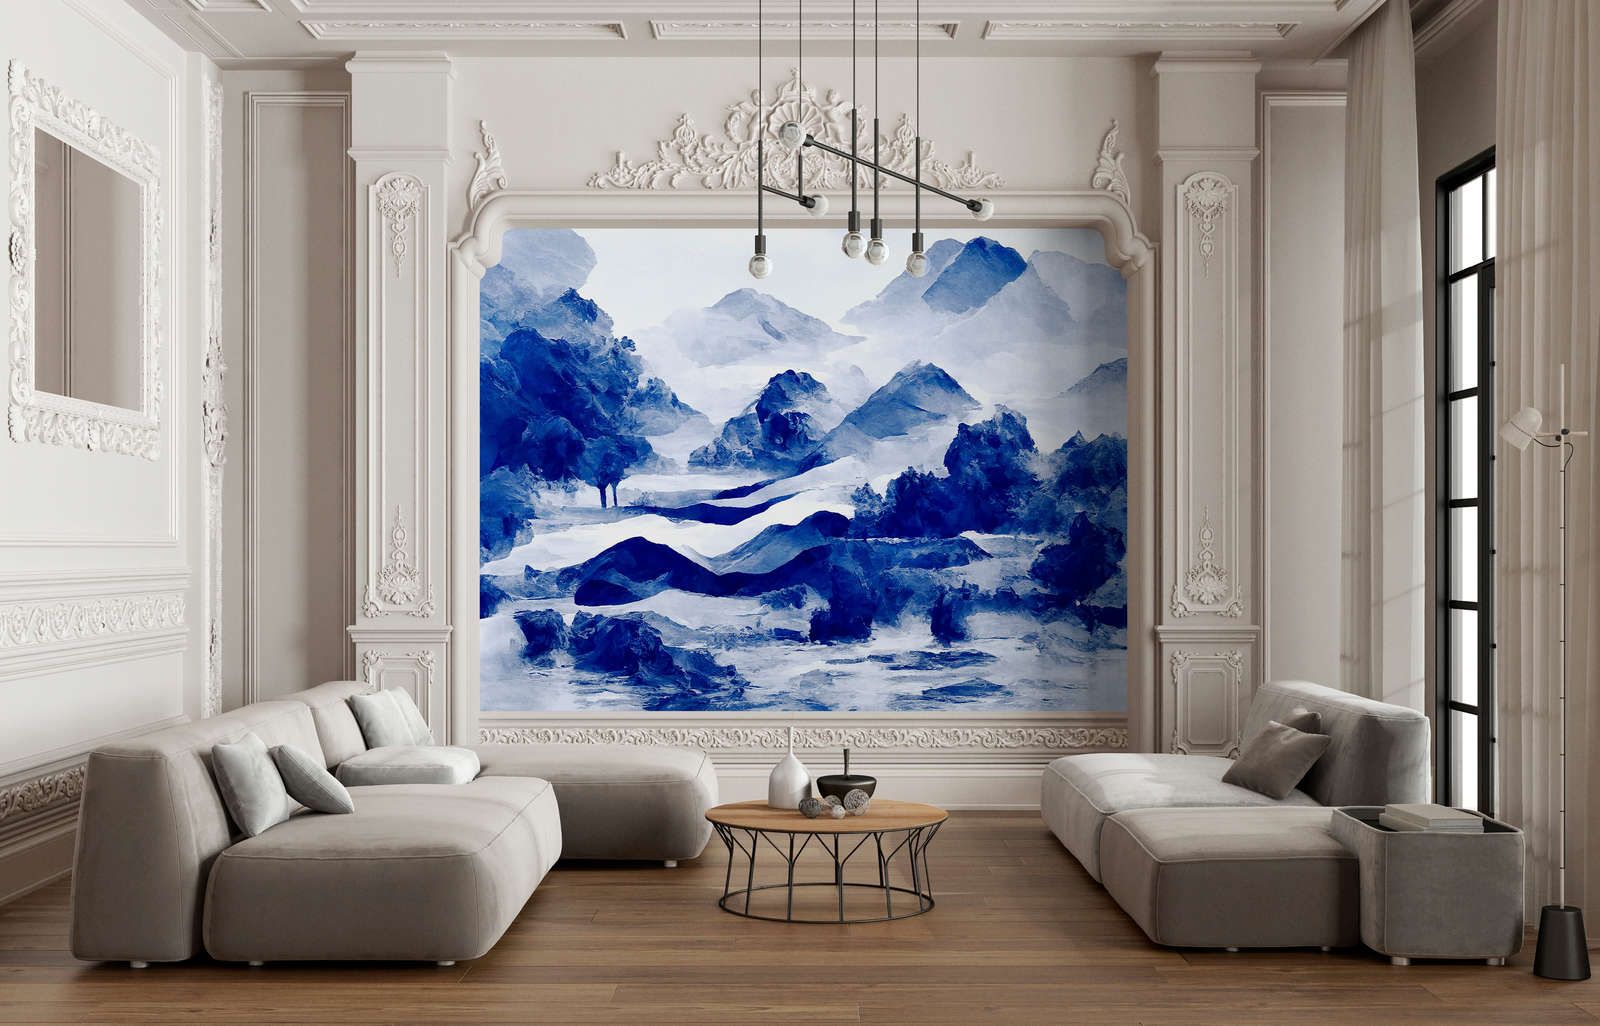             Digital behang »tinterra 3« - Landschap met bergen & mist - Blauw | Glad, licht glanzend premium vliesdoek
        